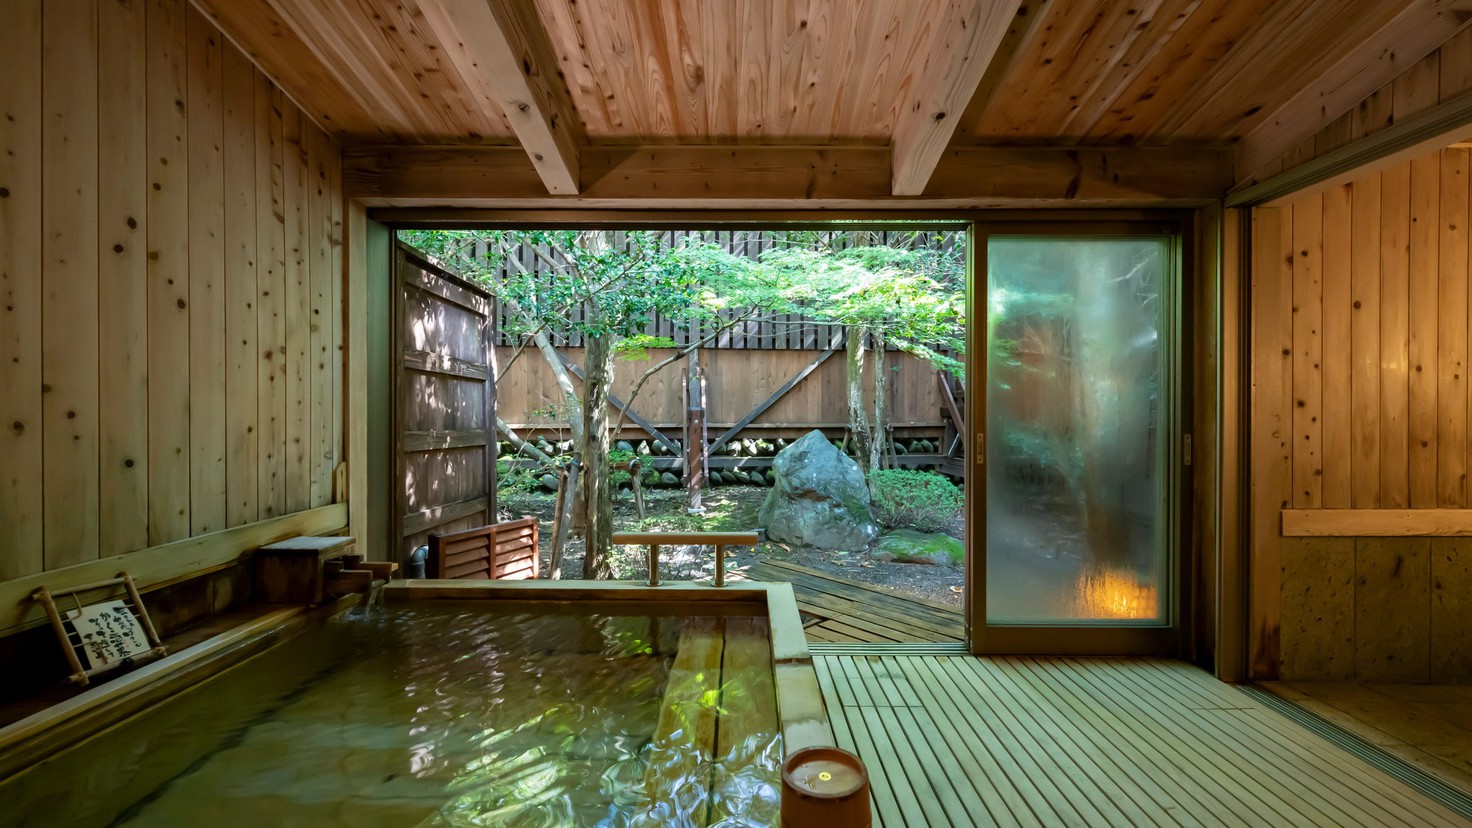 【貸切風呂】龍宮「木の湯」趣きの異なる湯舟と畳のお休み処が一緒になった貸切露天風呂